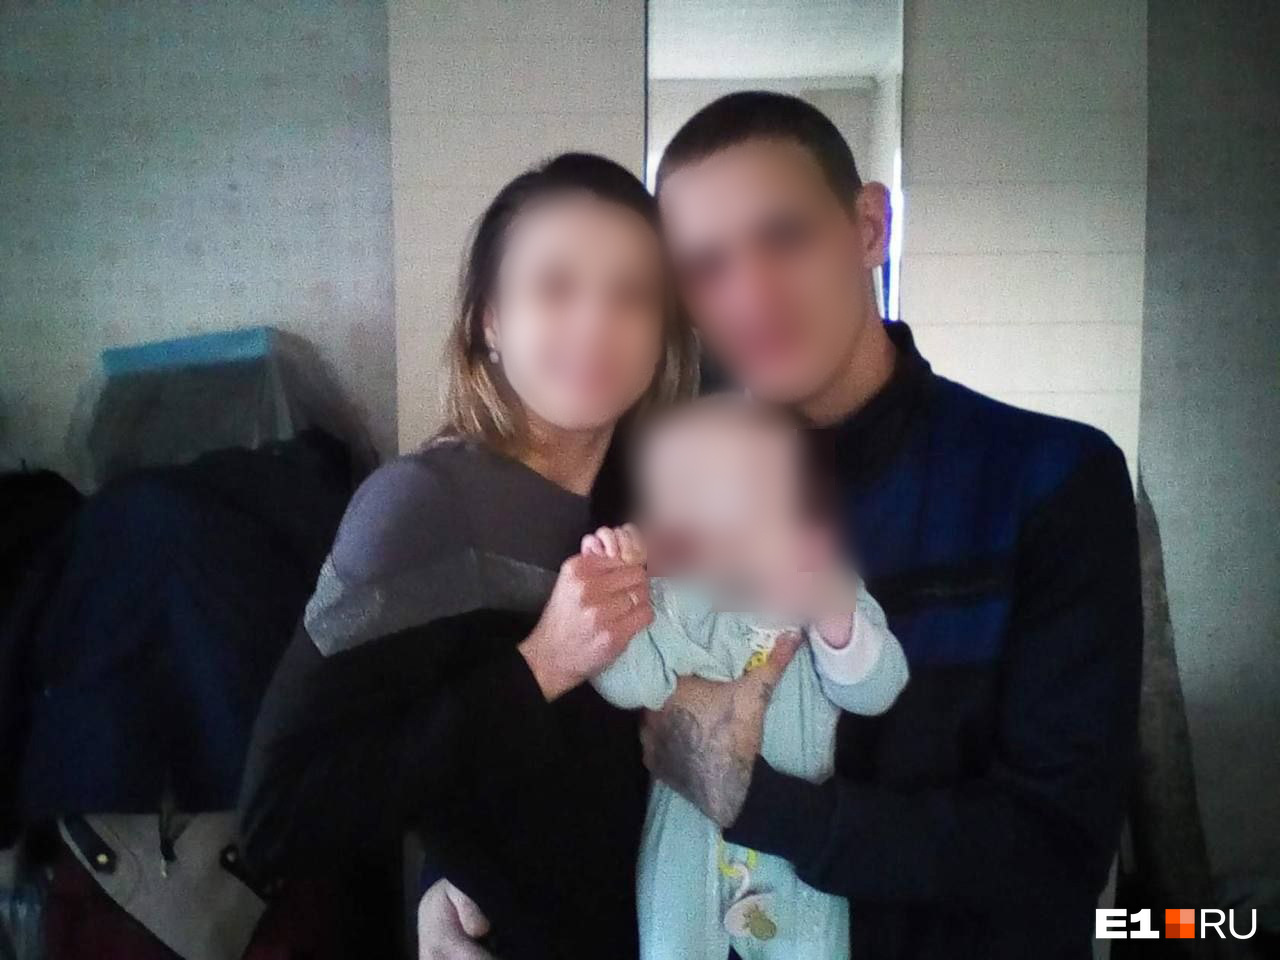 От чего умерла молодая семейная пара в своей квартире: пять вопросов следствию о жуткой трагедии на Урале